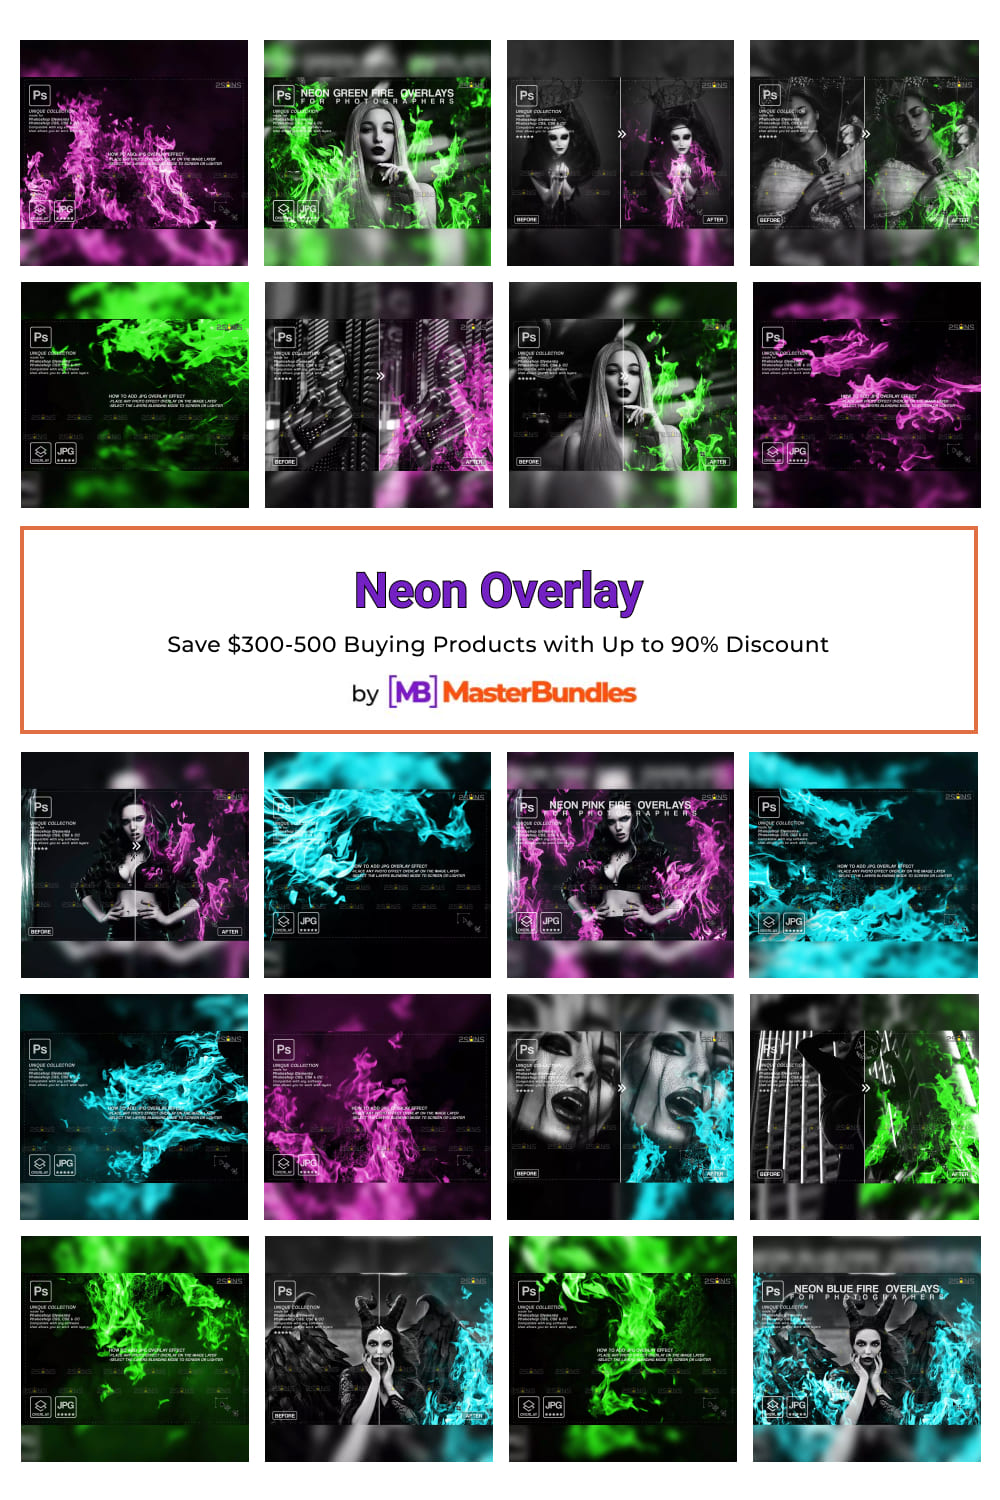 Neon Overlay Pinterest image.